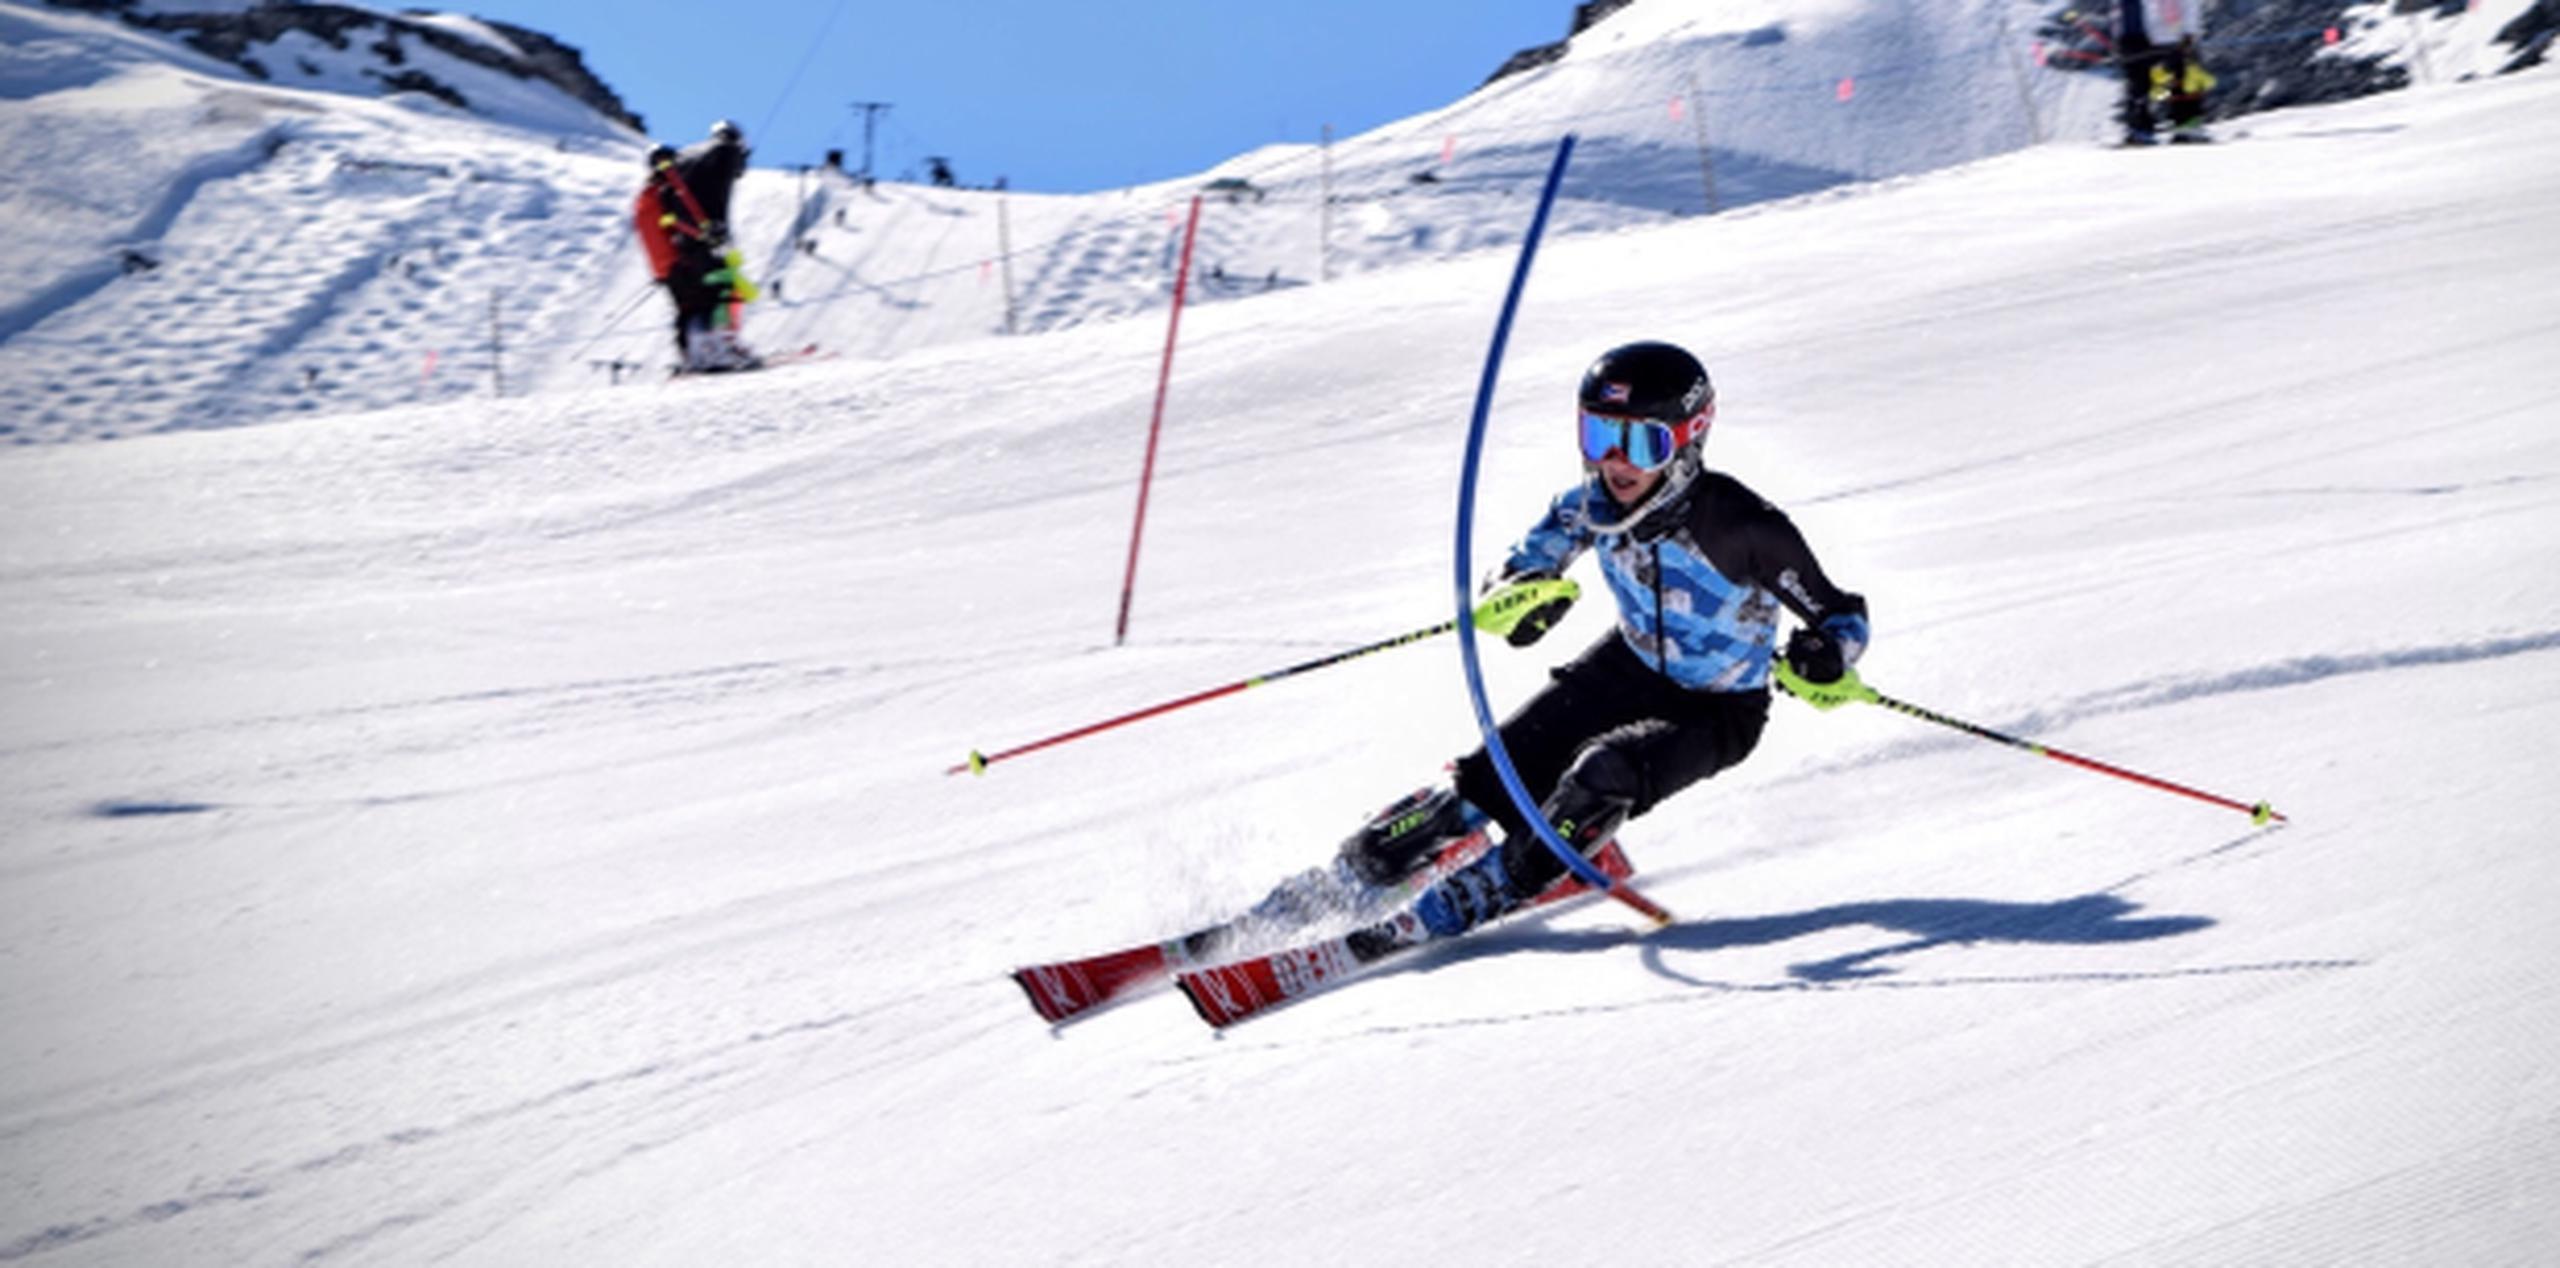 Charles Flaherty finalizó en la posición 73 entre los 110 esquiadores que comenzaron la competencia. (Suministrada)